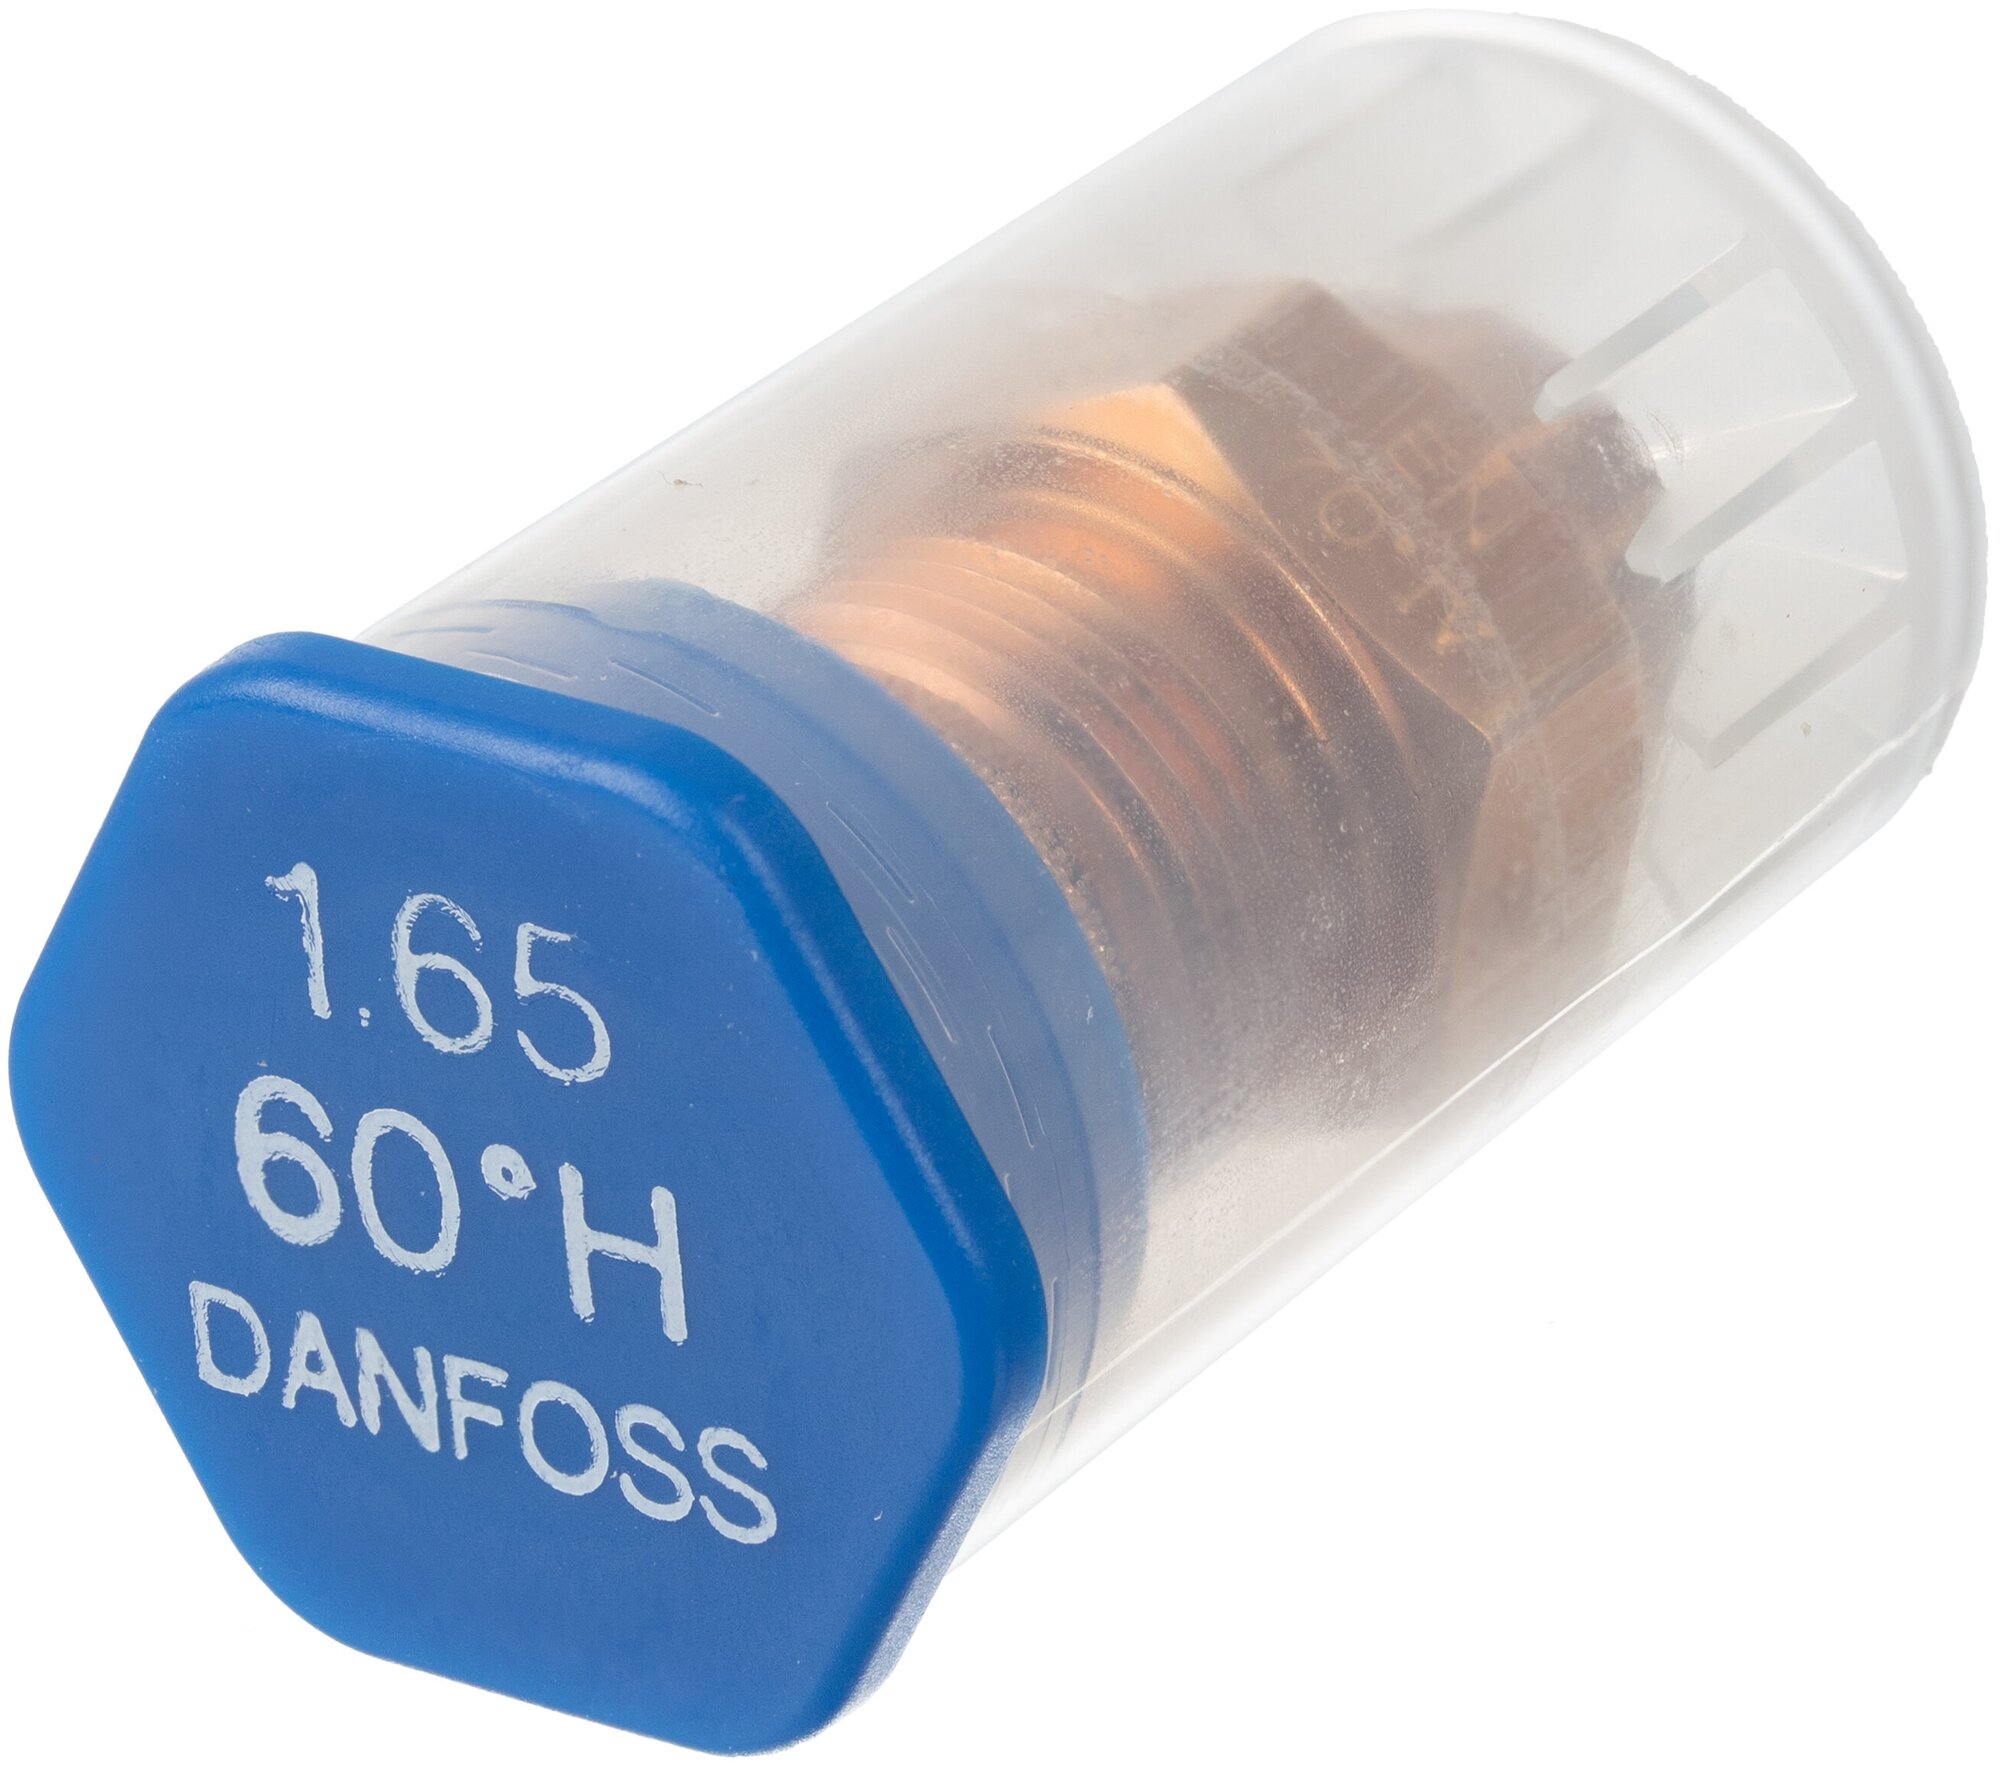 Топливная форсунка Danfoss 1.65GPH,60H 030H6929